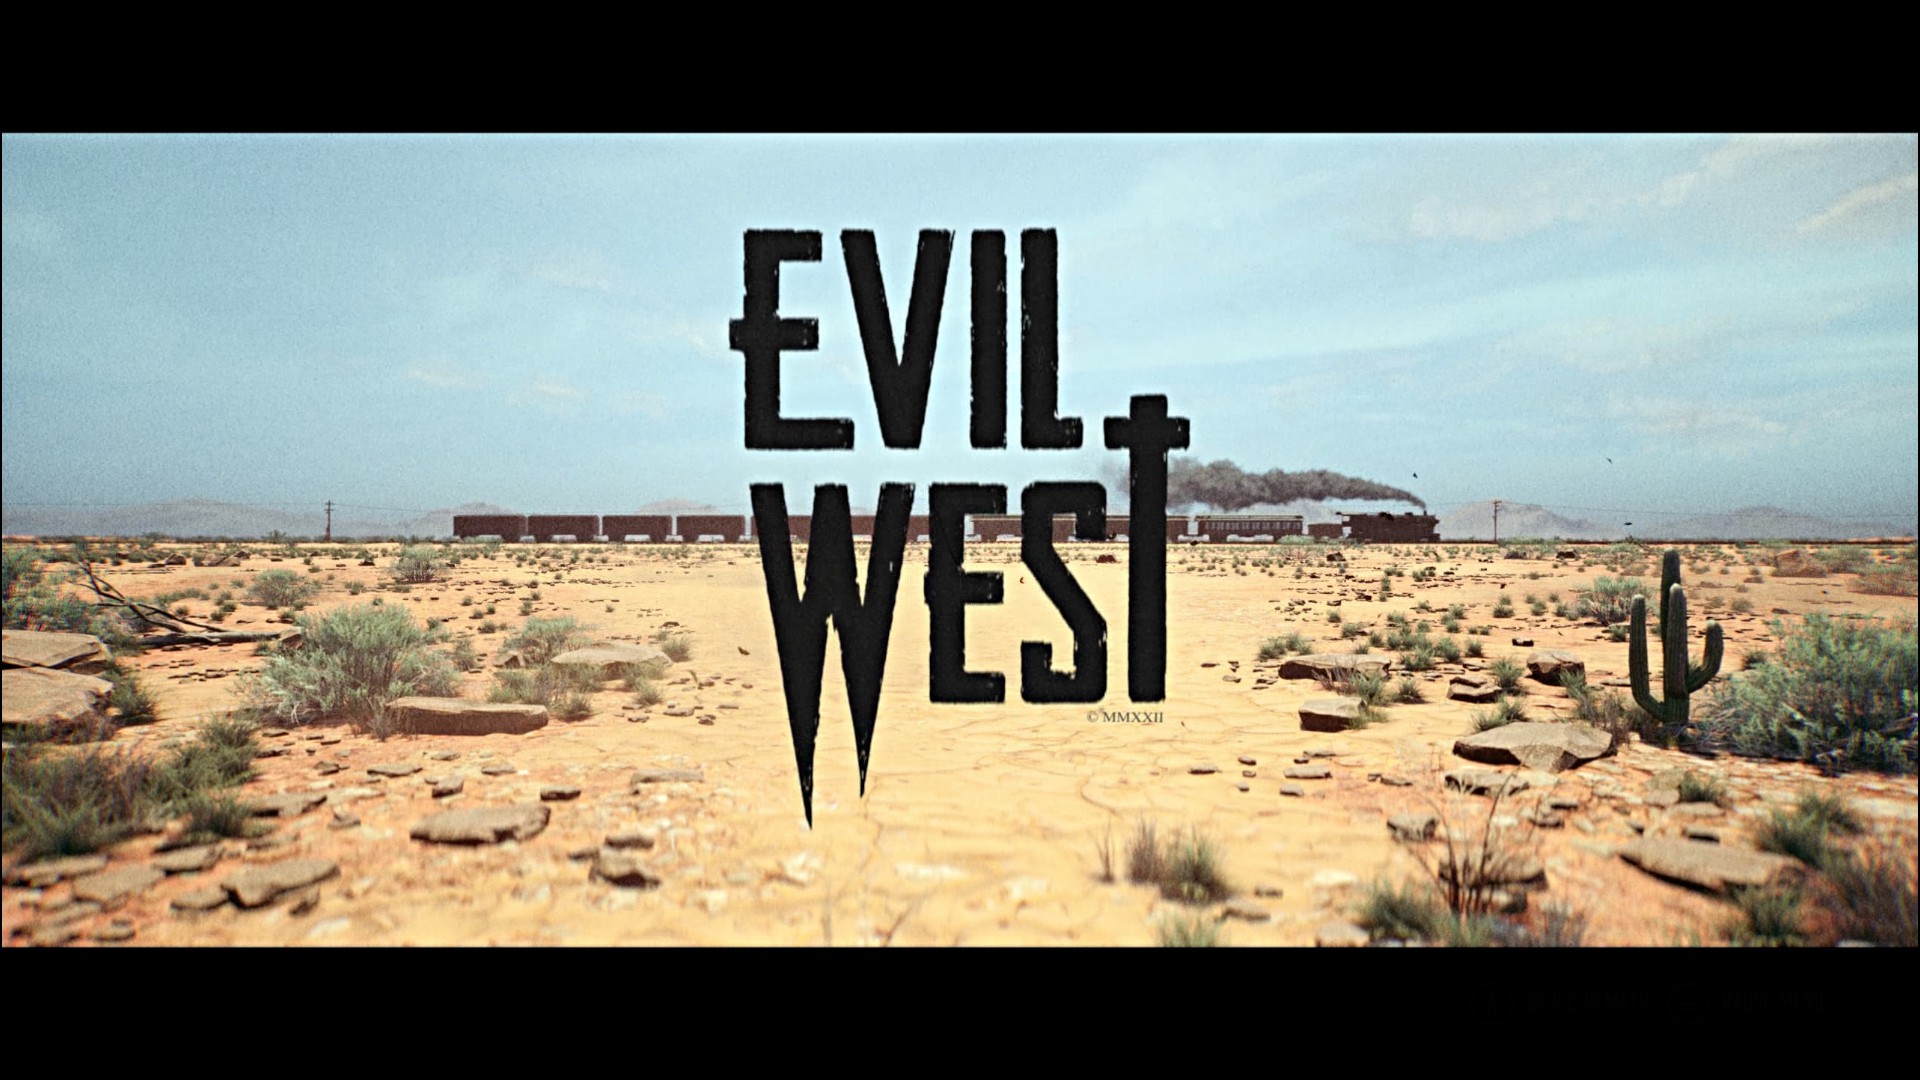 Evil West ganha requisitos para versão de PC - HIT SITE